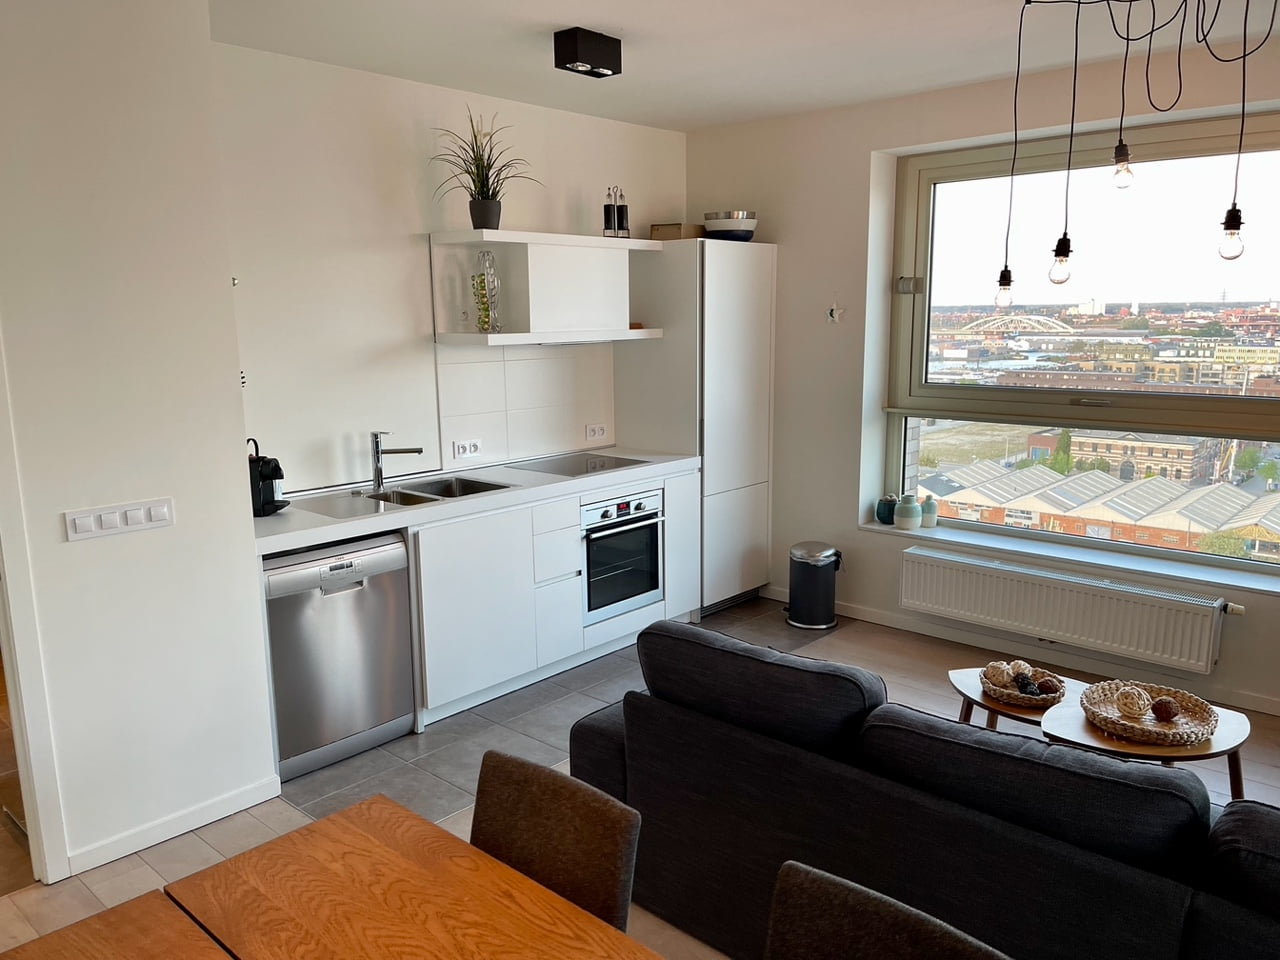 Eilandje - Luxury apartment for rent in Antwerp